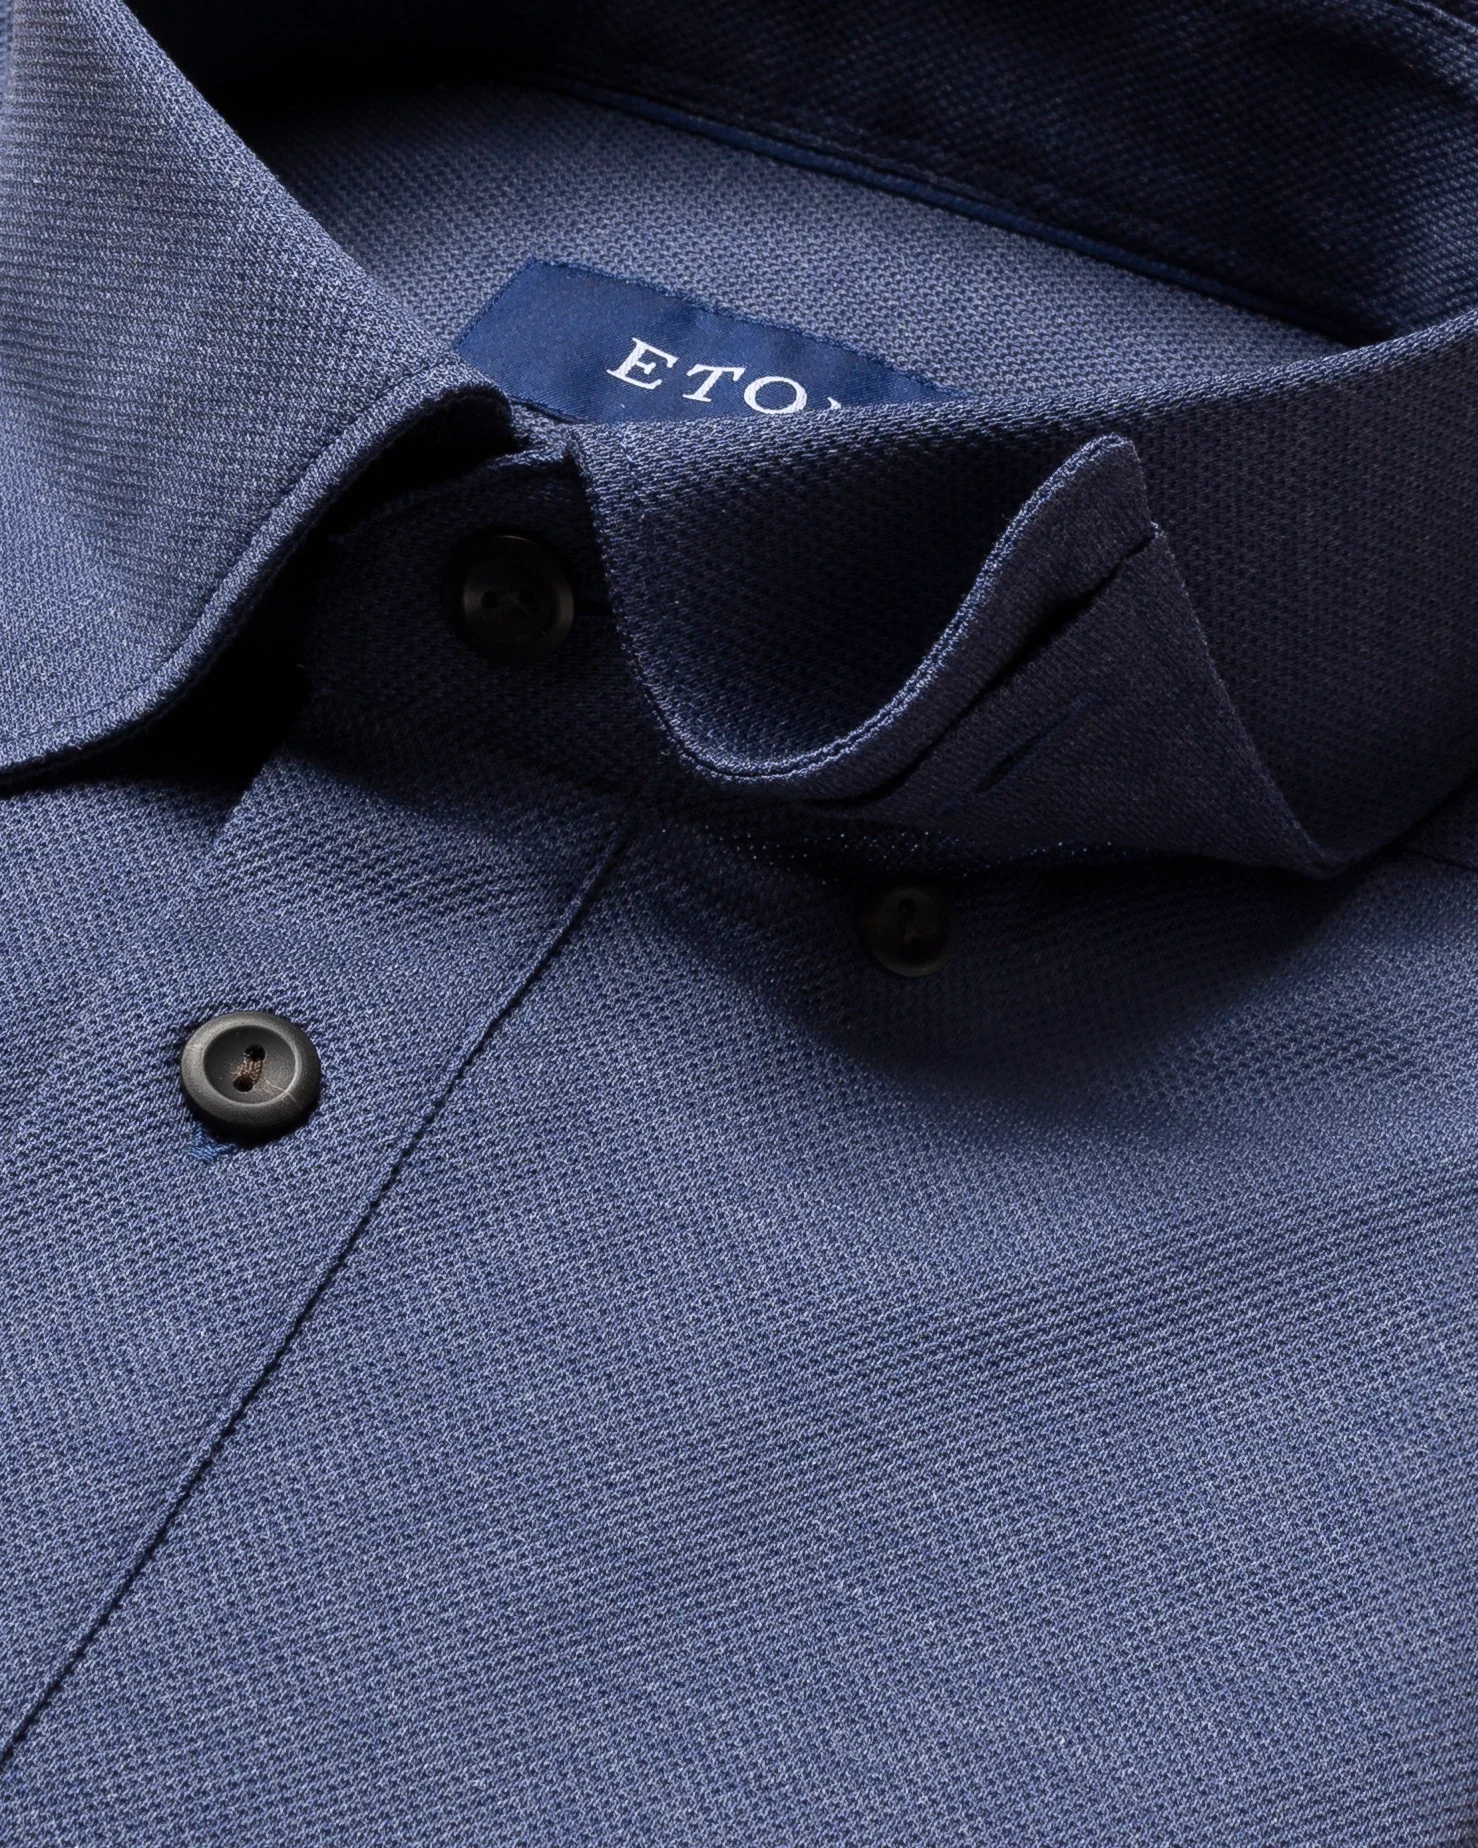 Eton - indigo blue polo shirt long sleeved